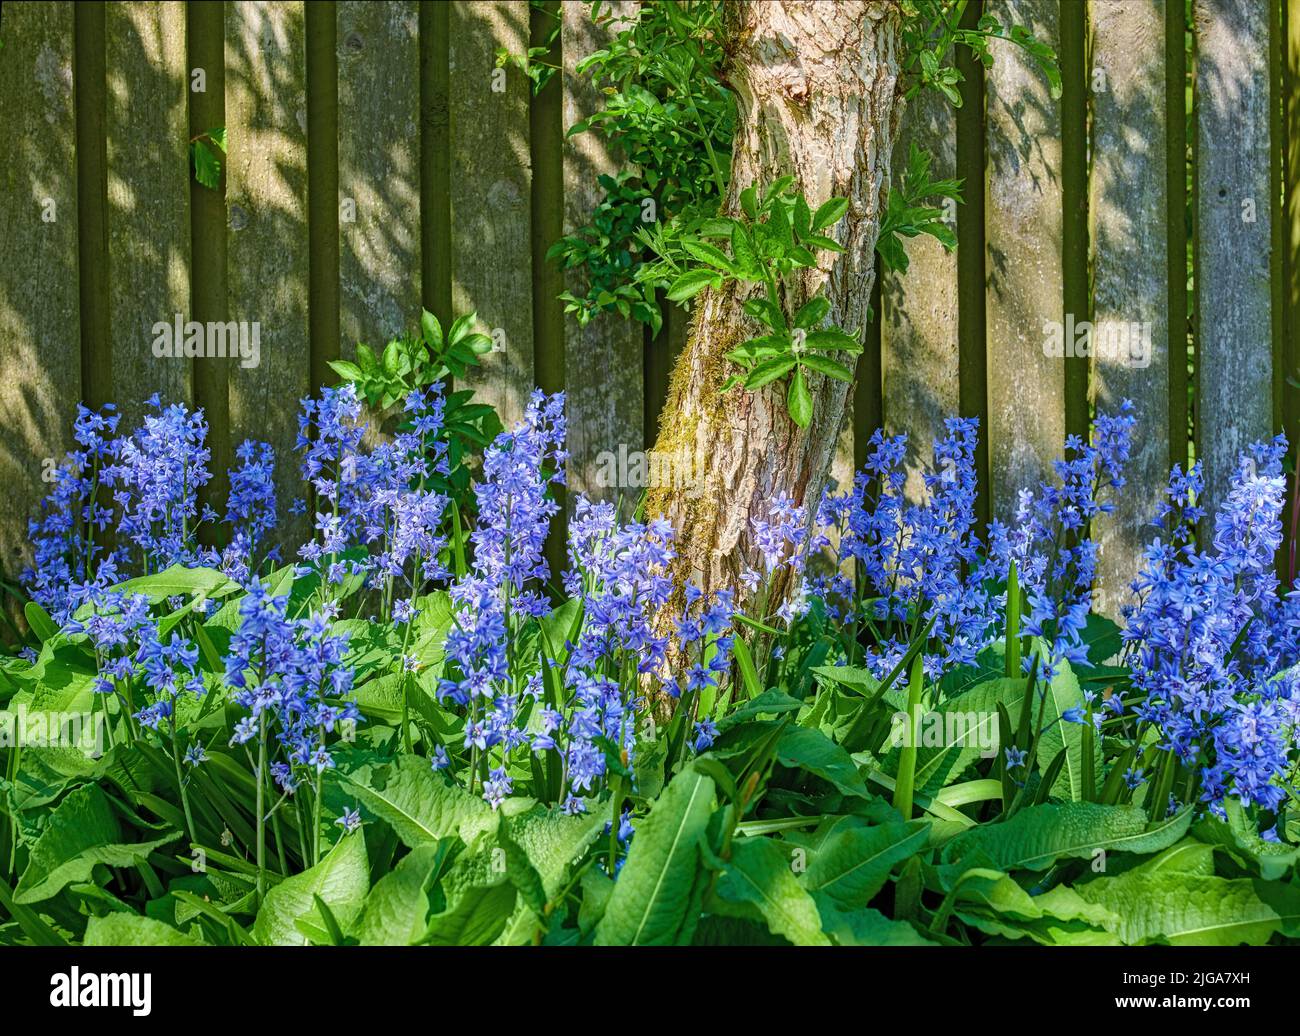 Vista del paesaggio di fiori di bluebell comuni che crescono e fioriscono su steli verdi in cortile privato o appartato giardino di casa. Dettagli testurizzati di Foto Stock